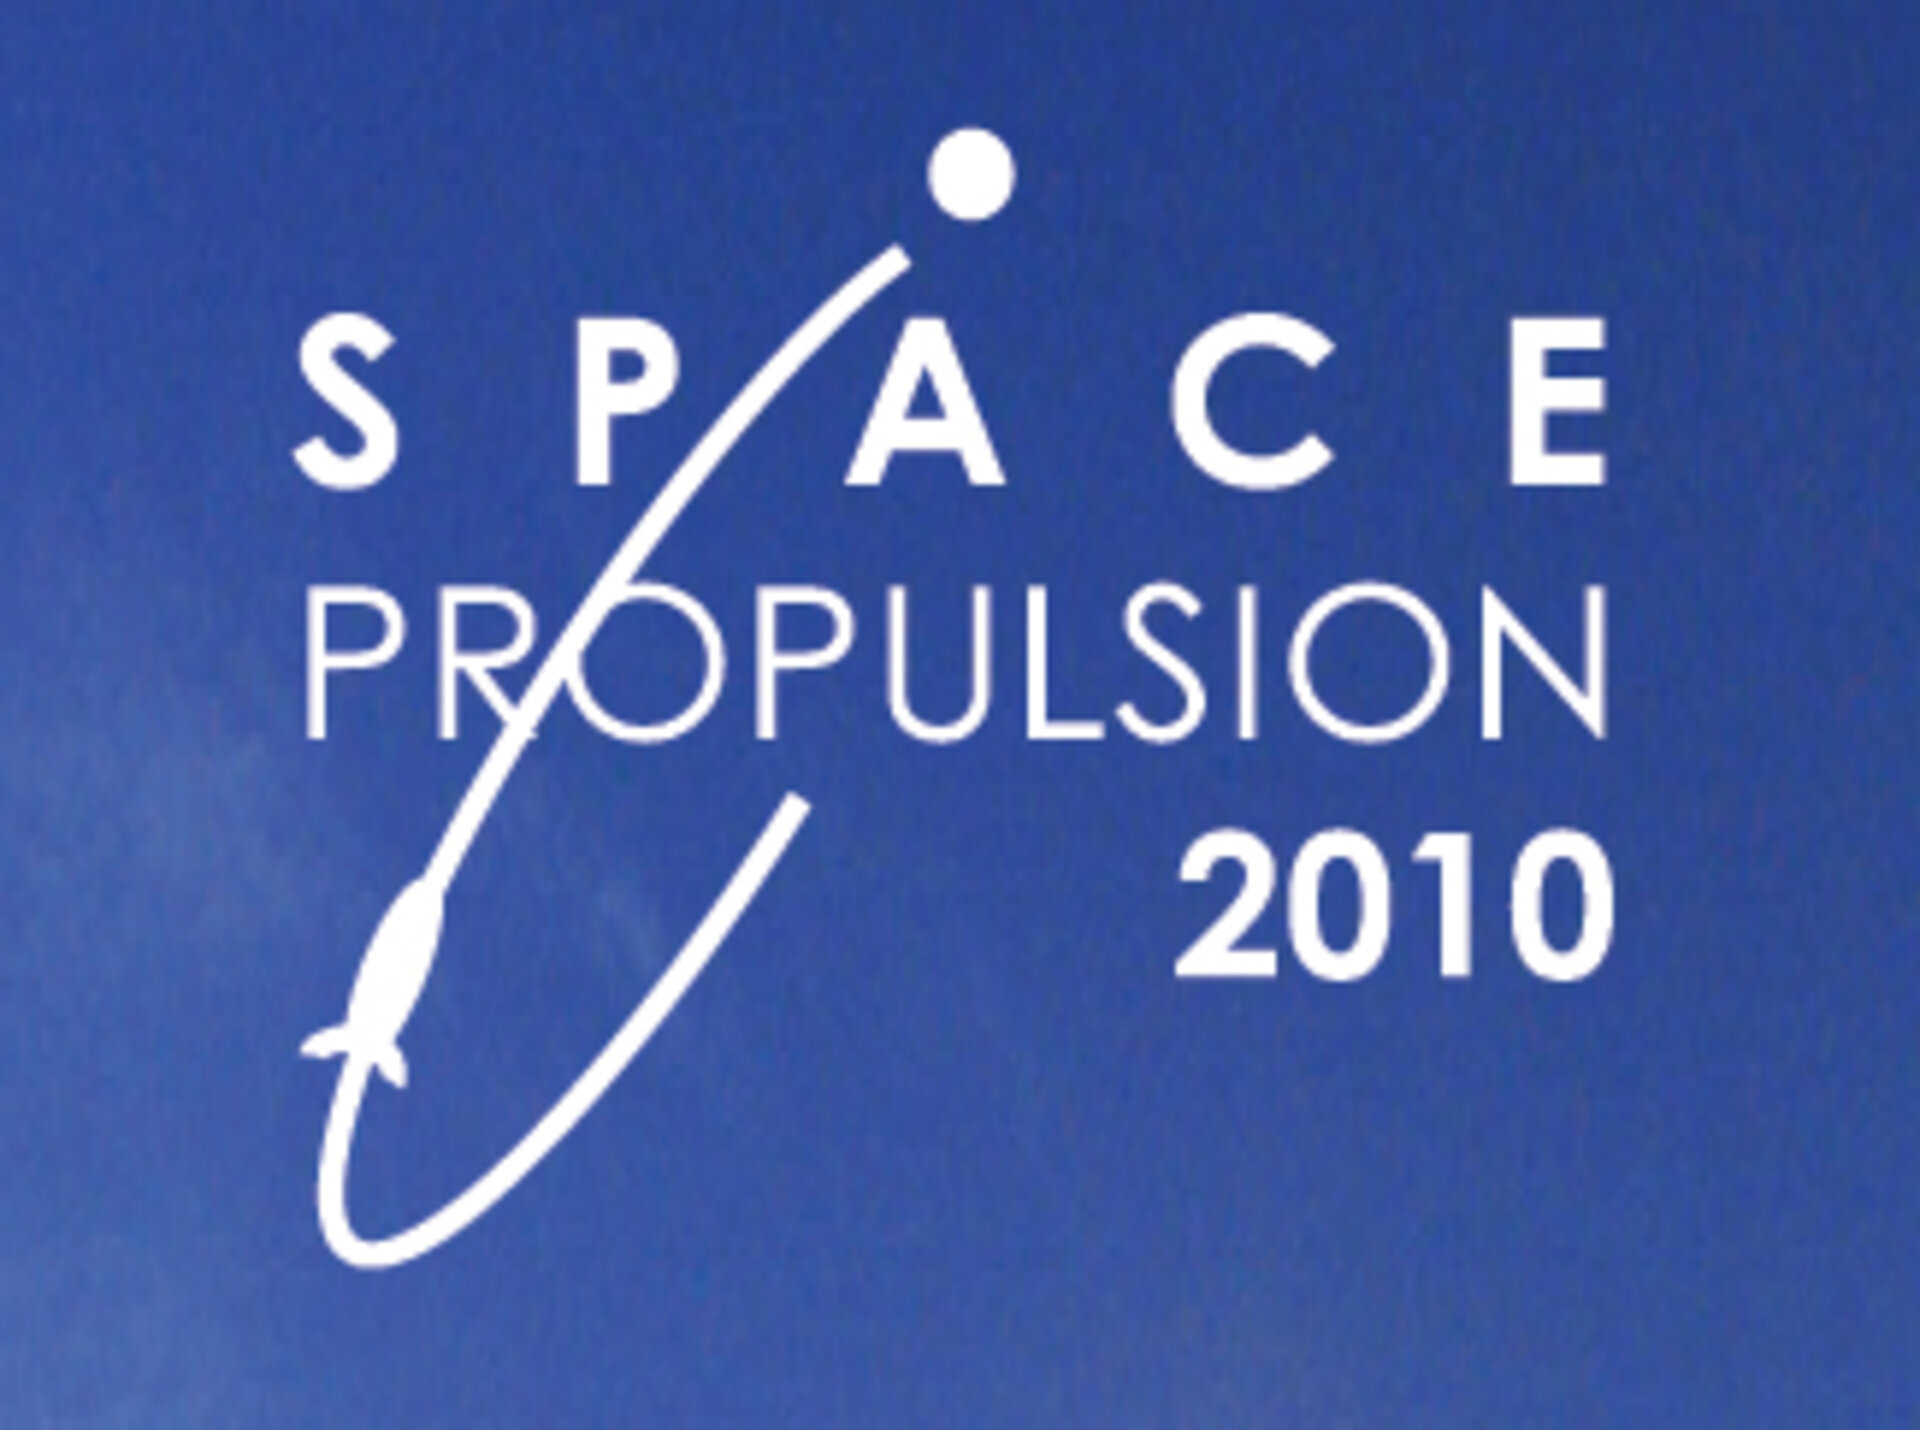 Conferencia sobre Propulsión Espacial 2010